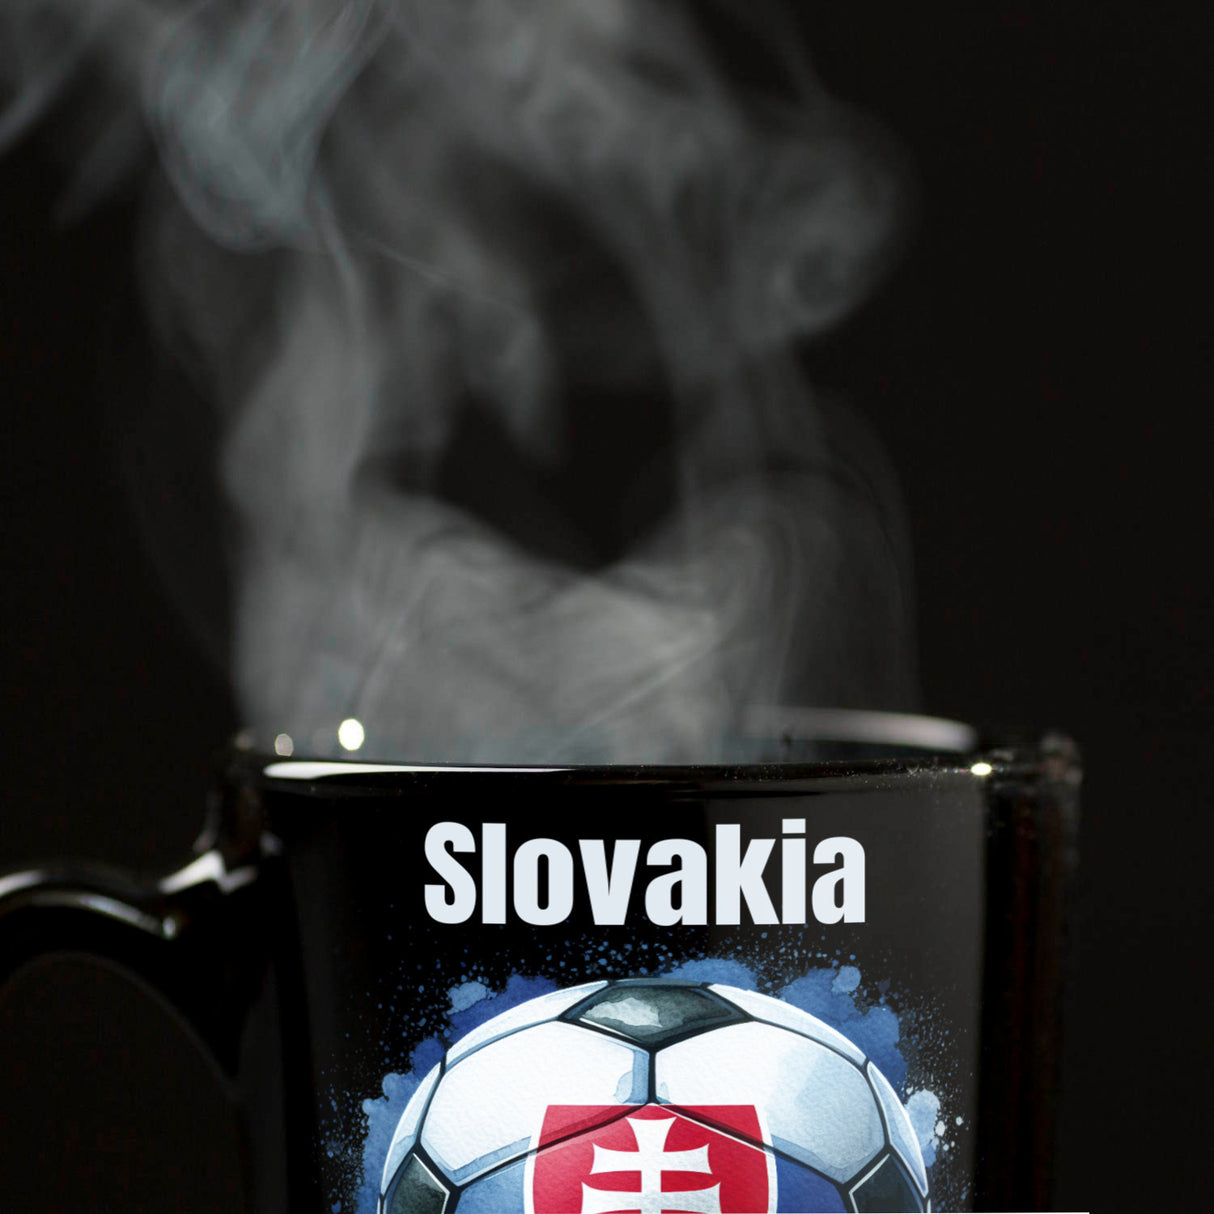 Fußball Slowakei Flagge Tasse in Schwarz